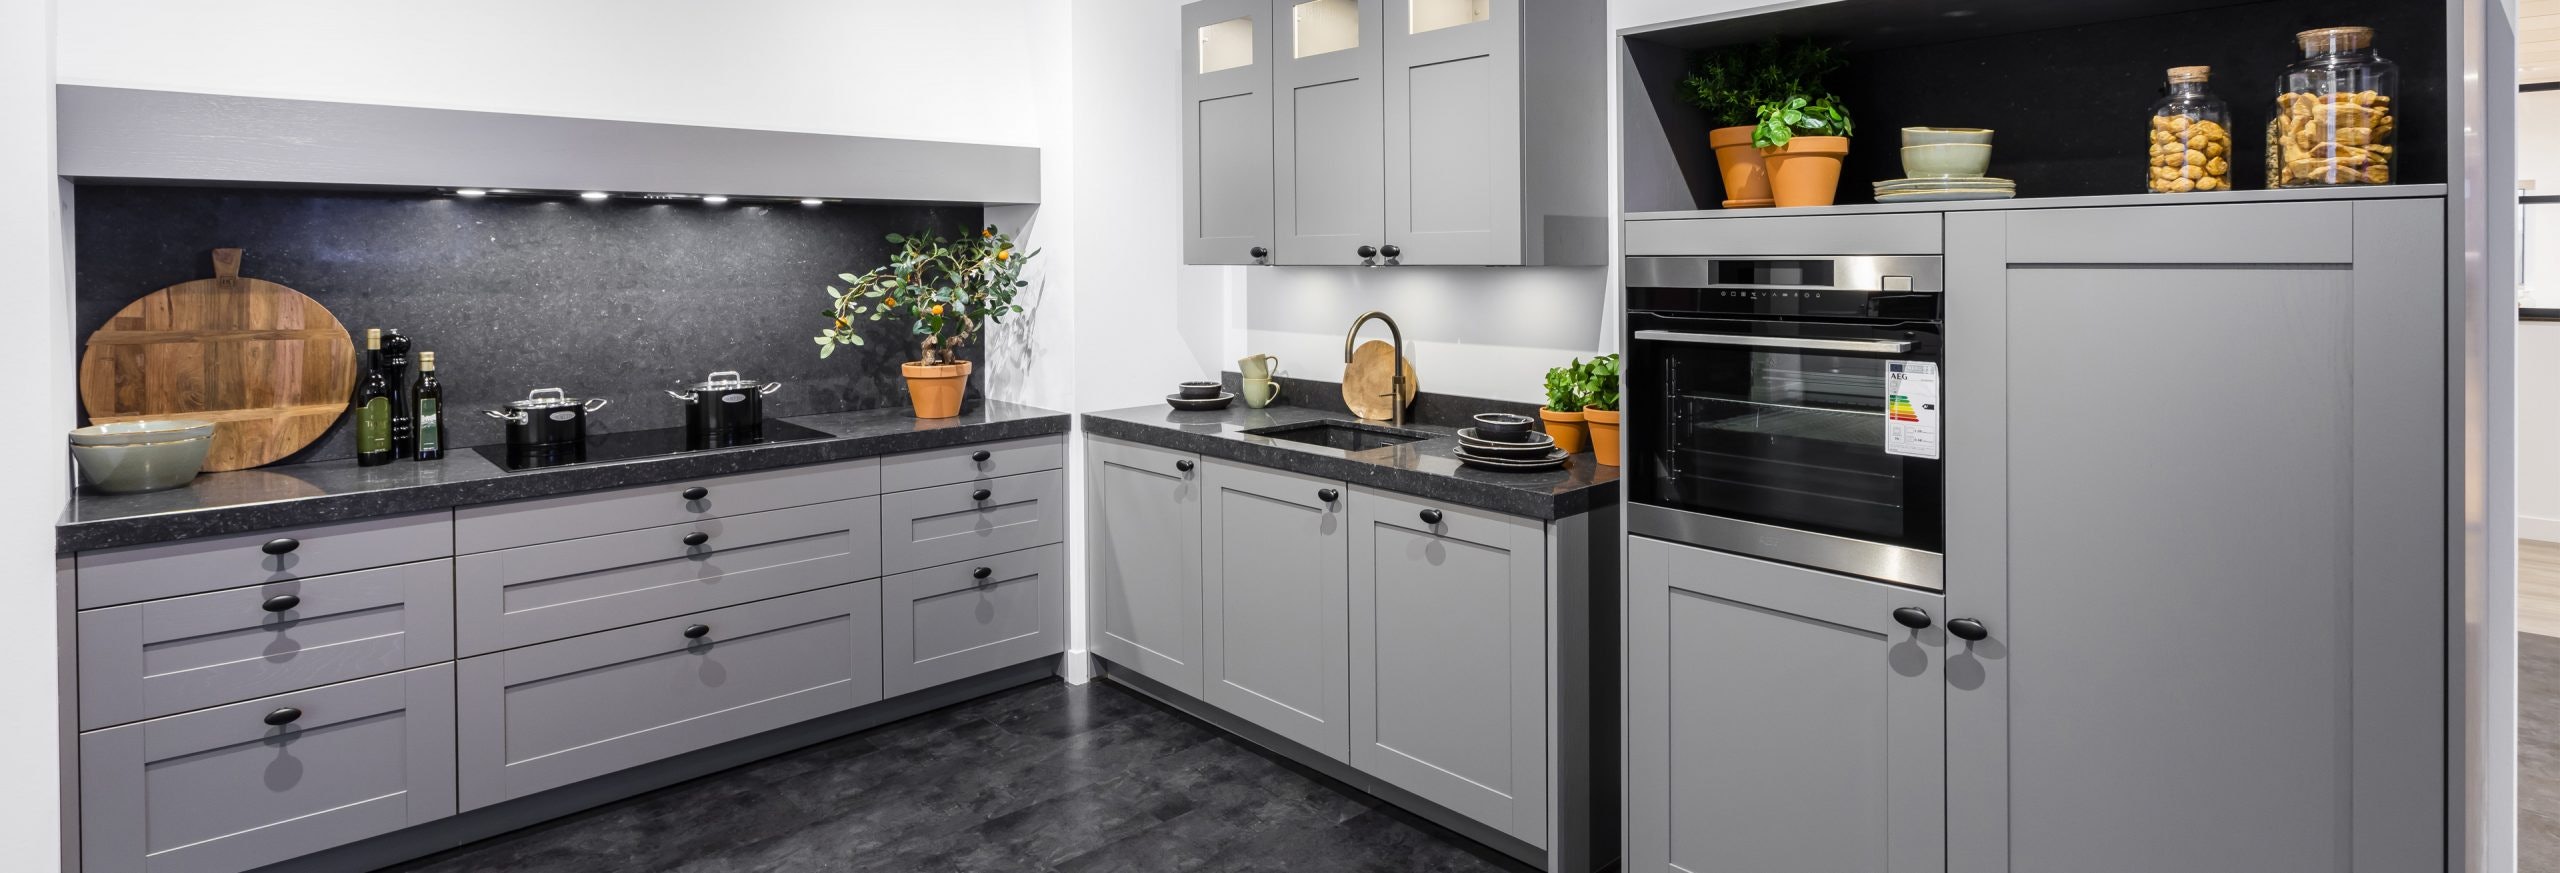 Keuken 1400216 - Grijze landelijk moderne hoekkeuken met kader deurtjes